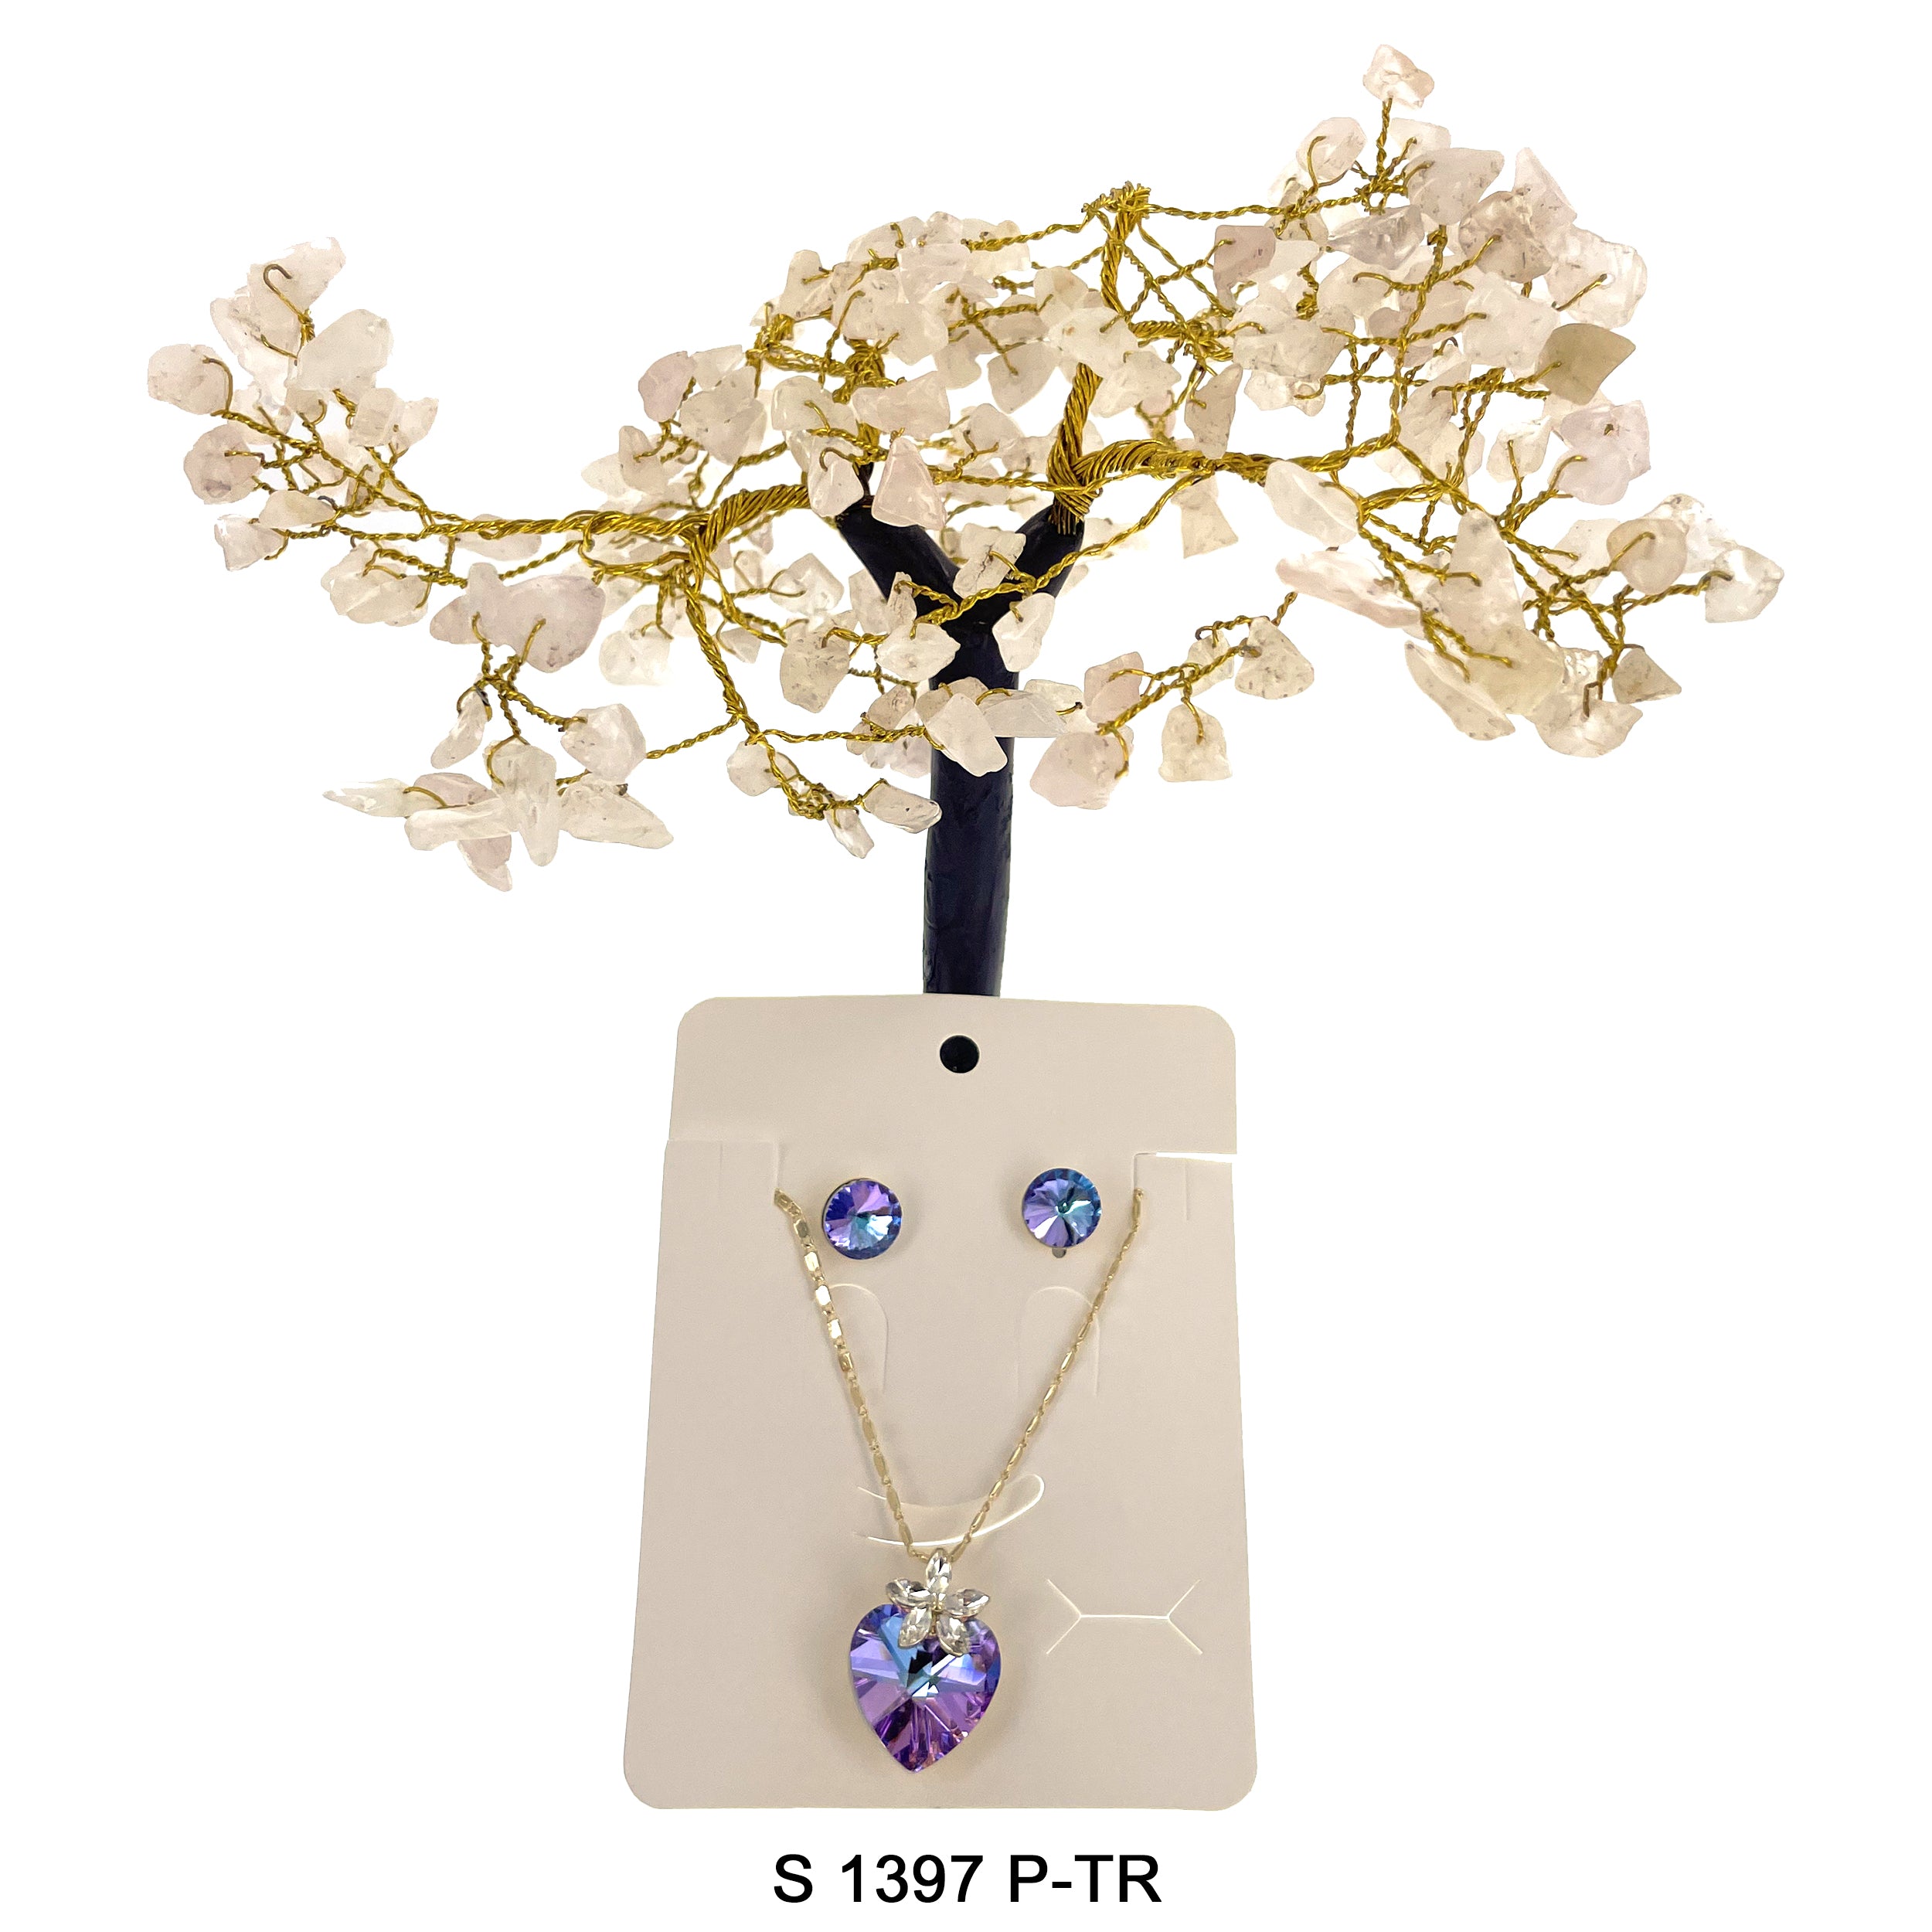 Heart Flower Pendant Necklace Set S 1397 P-TR